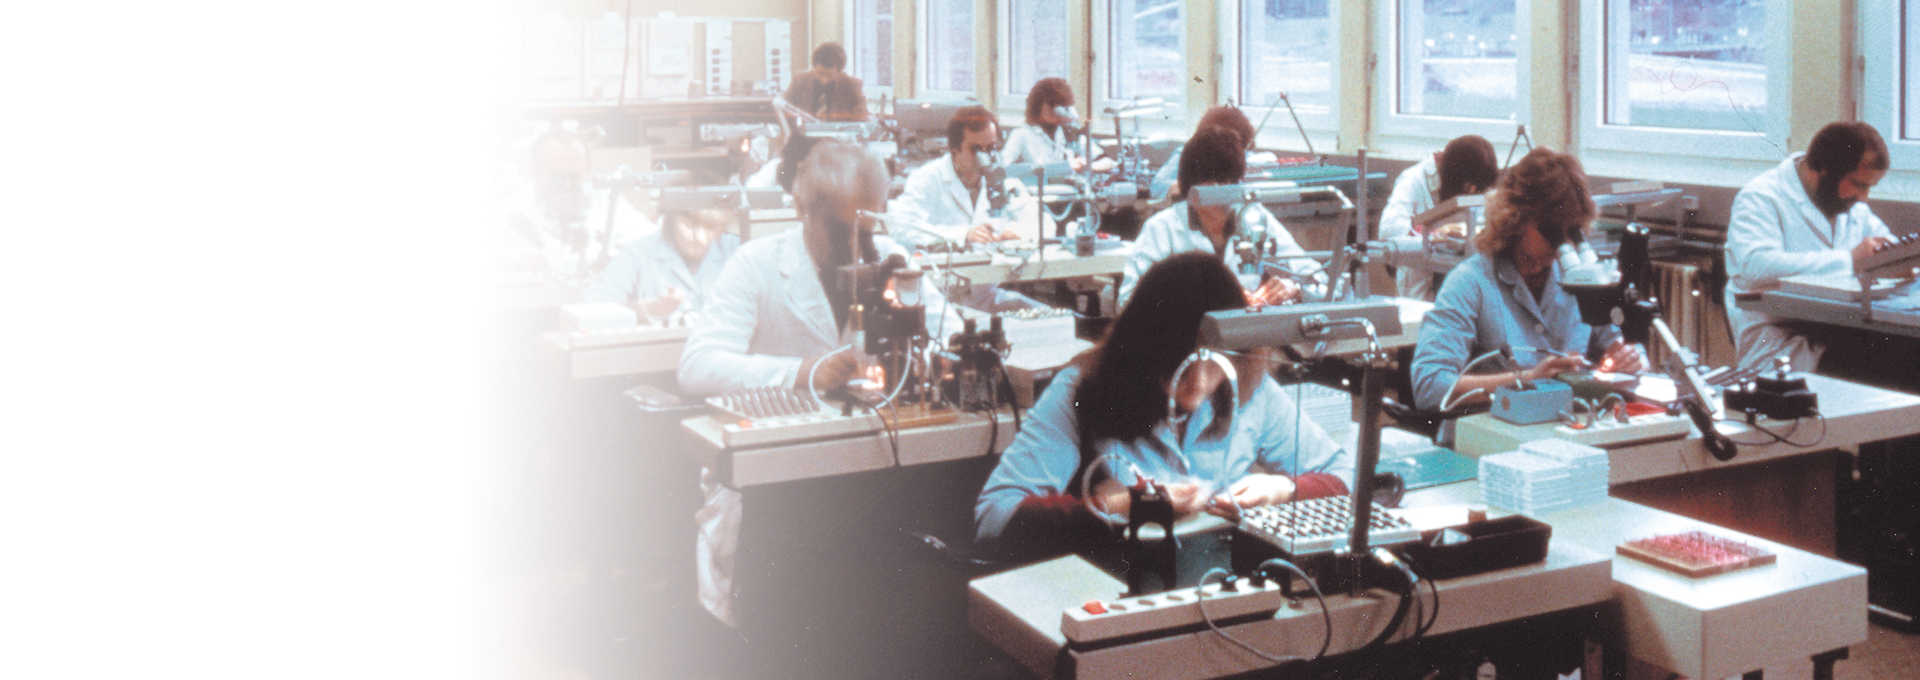 Gammalt foto av ett rum fullt av engagerade arbetare i laboratorierockar som arbetar med Bernafons hörapparatproduktion, 1989